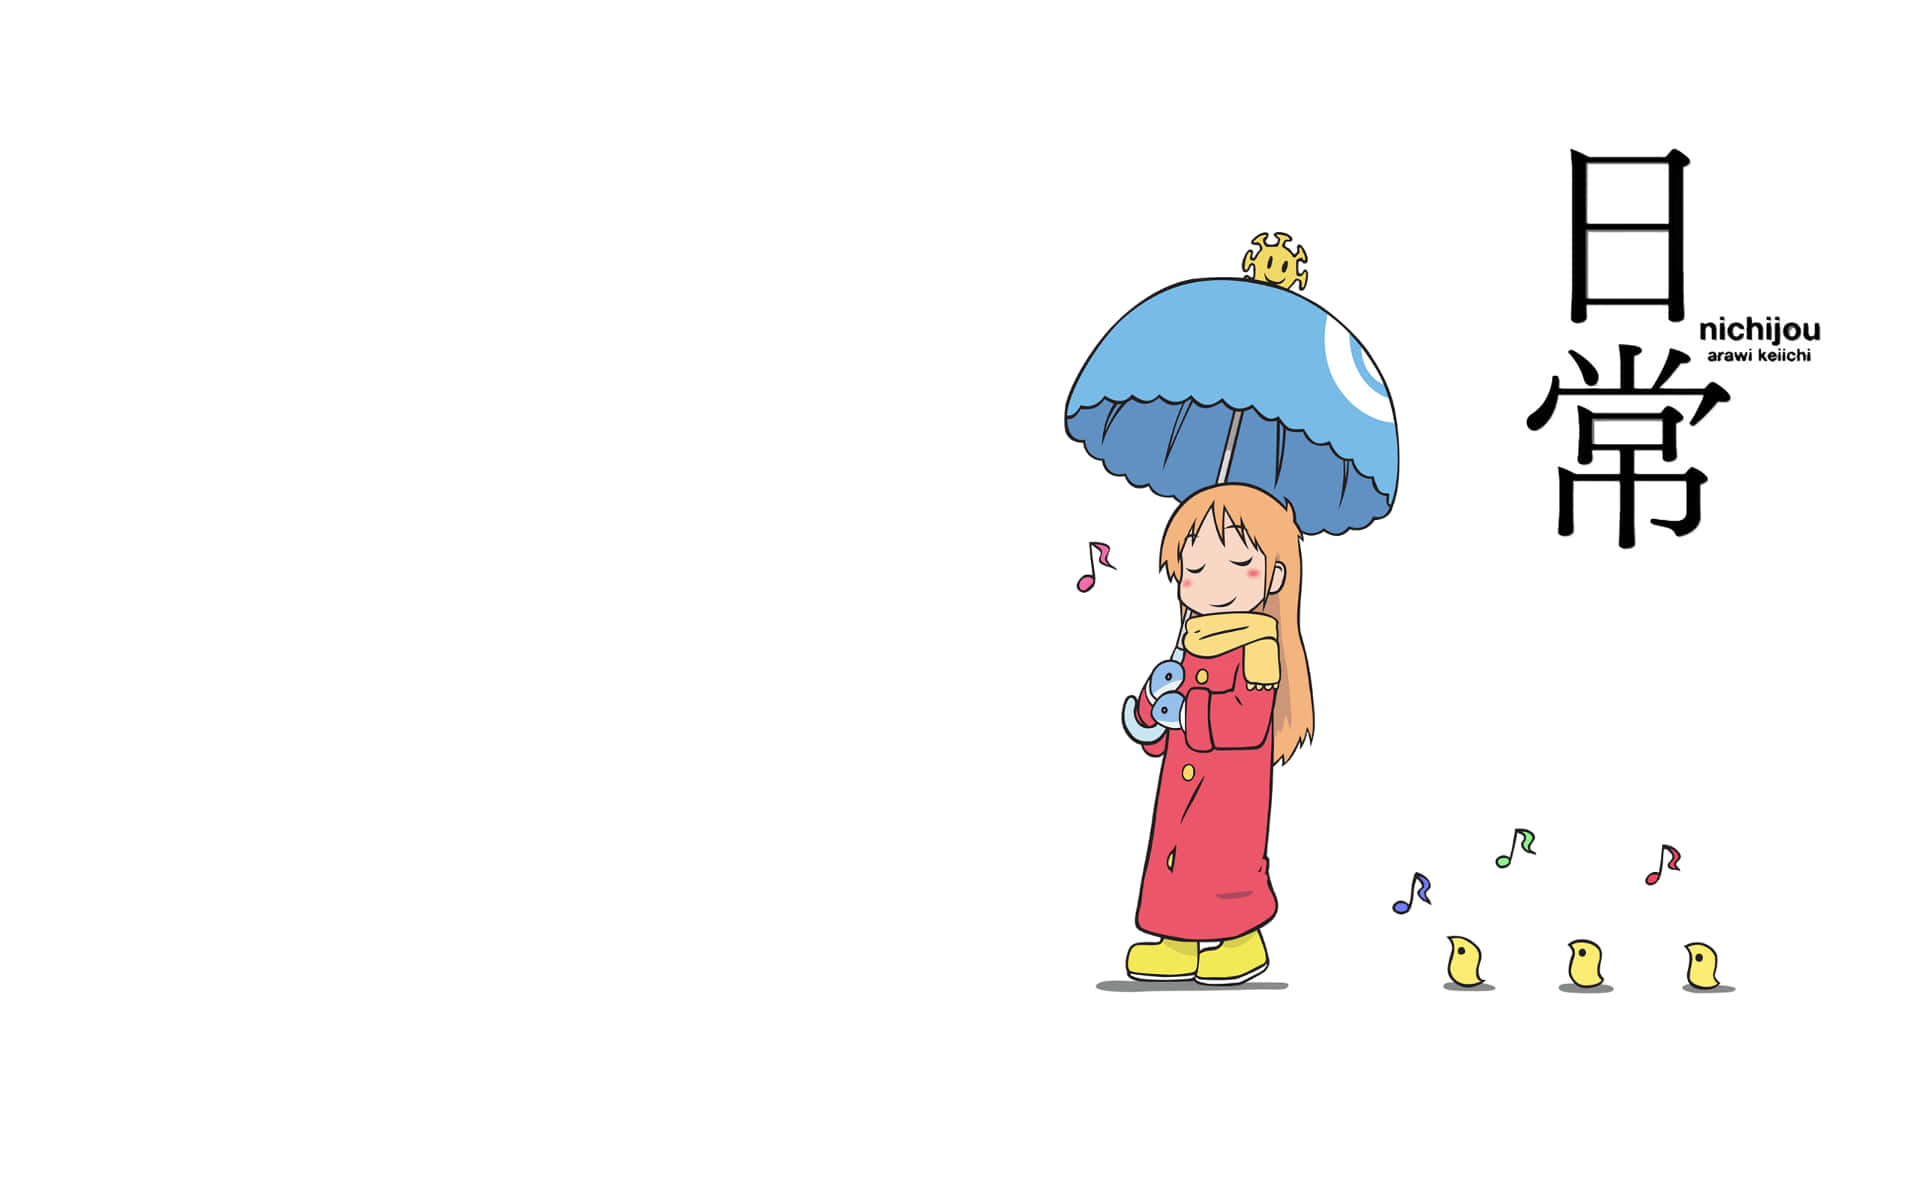 En pige med en paraply og en sangfugl, der nyder regnen. Wallpaper